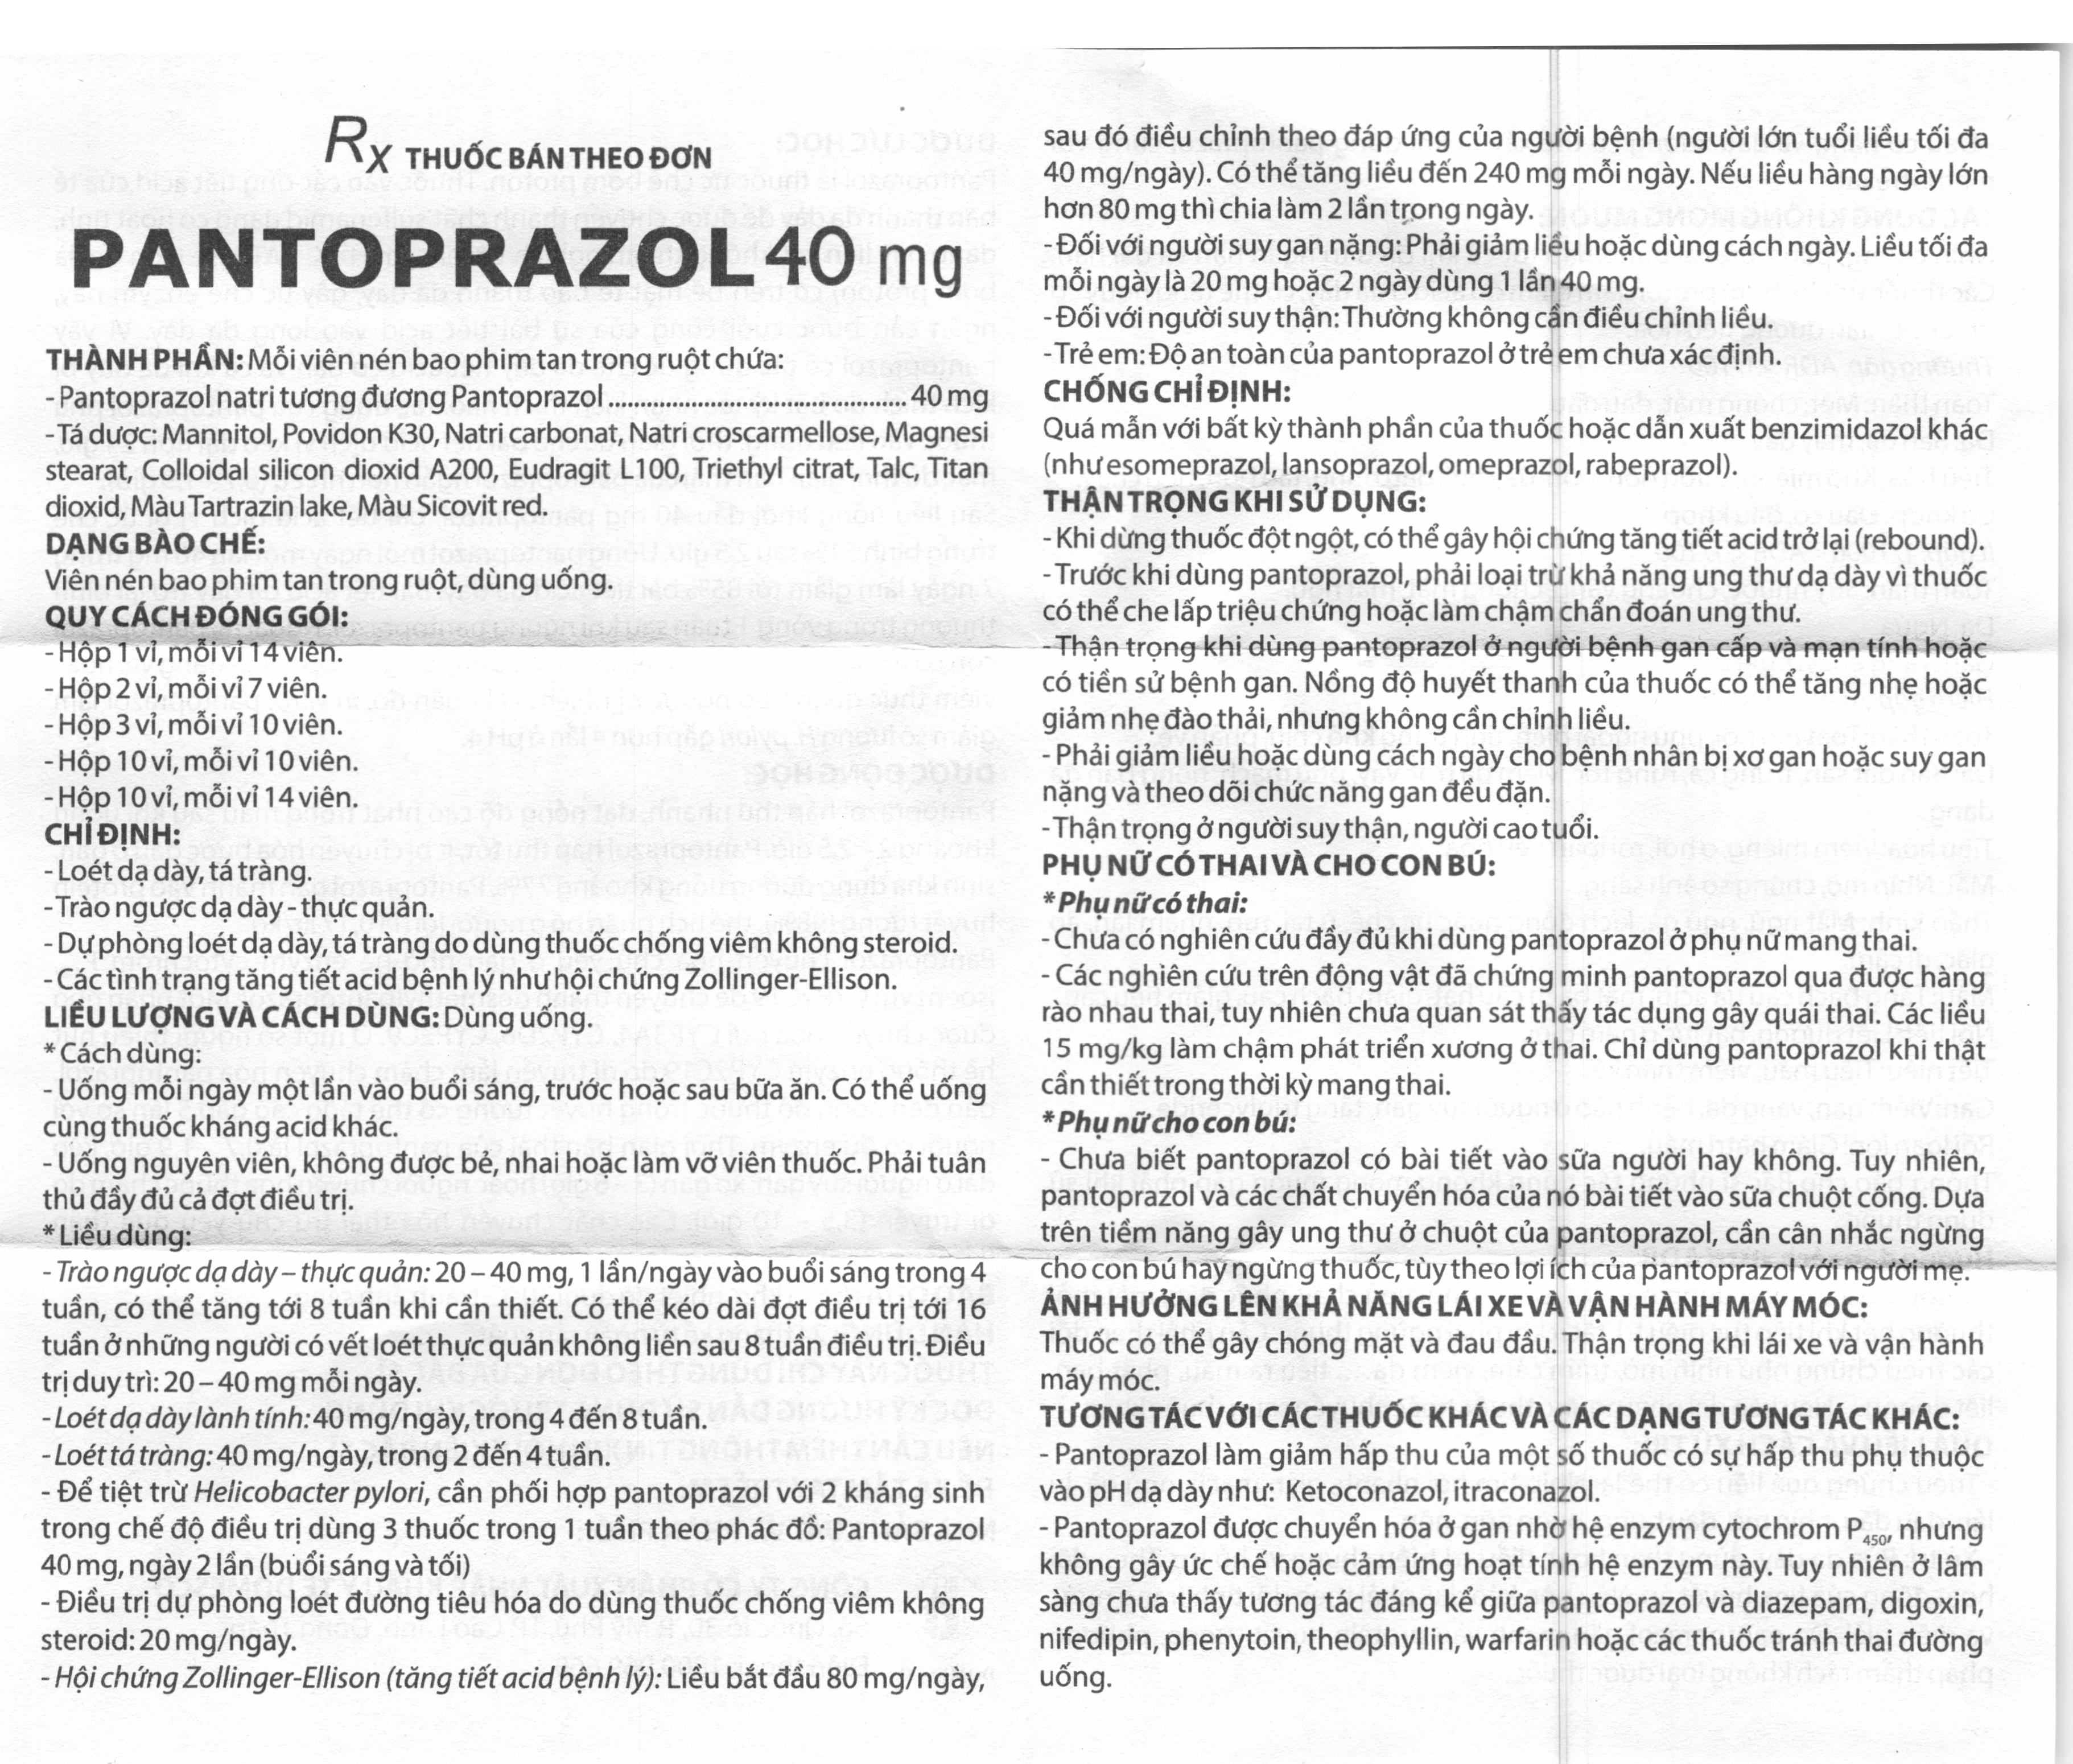 Pantoprazol Domesco 40mg trị loét dạ dày